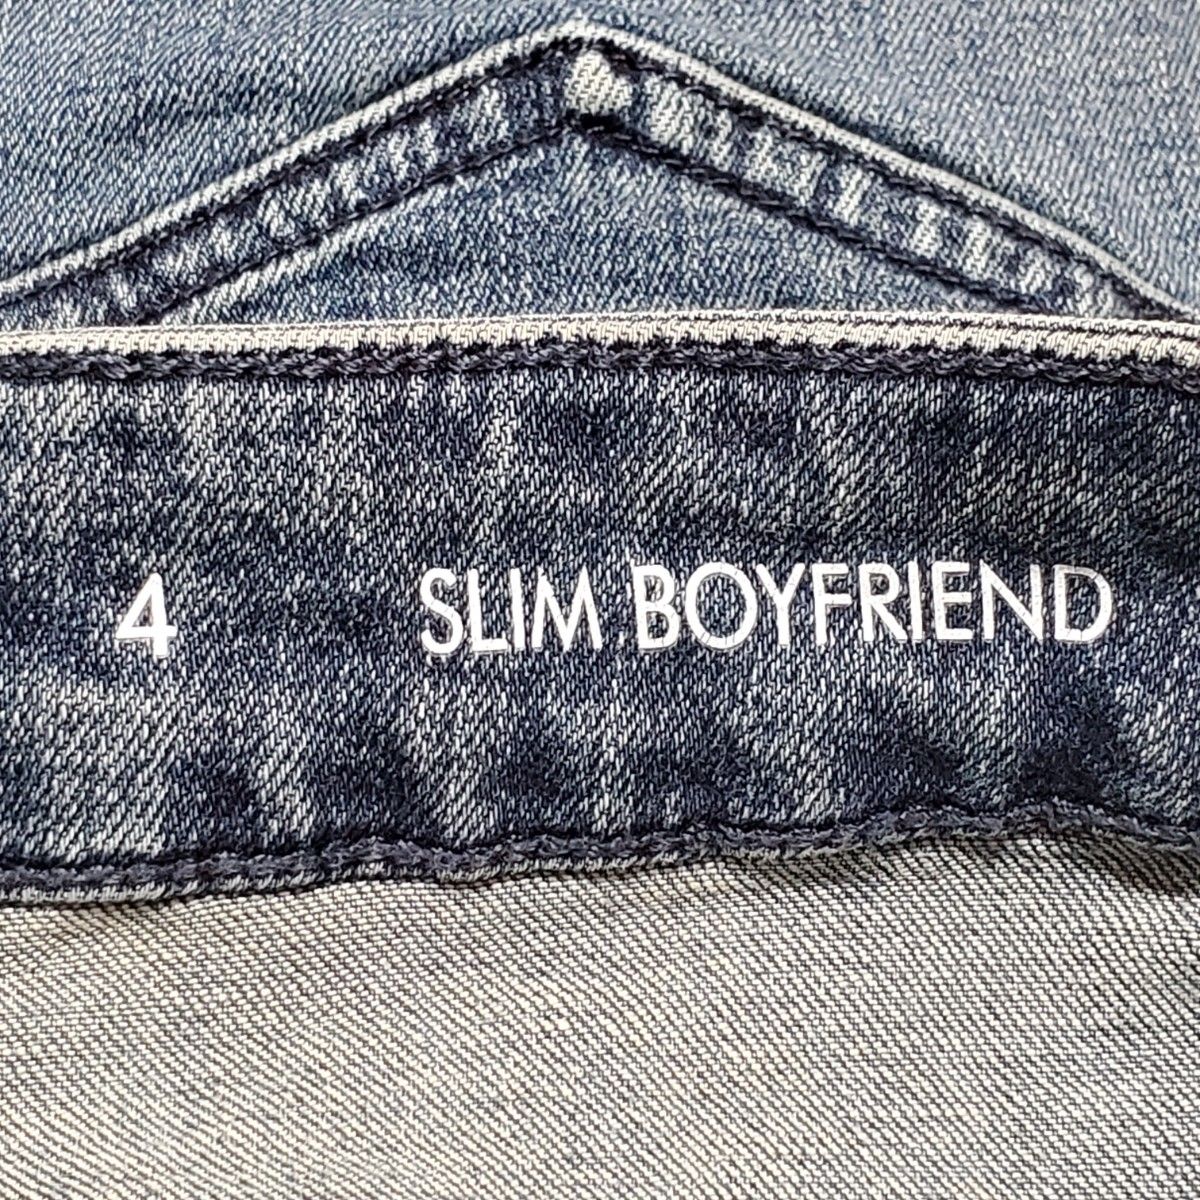 Calvin Klein jeans カルバンクライン ジーンズ 4サイズ レディース デニム スリム ボーイフレンド パンツ